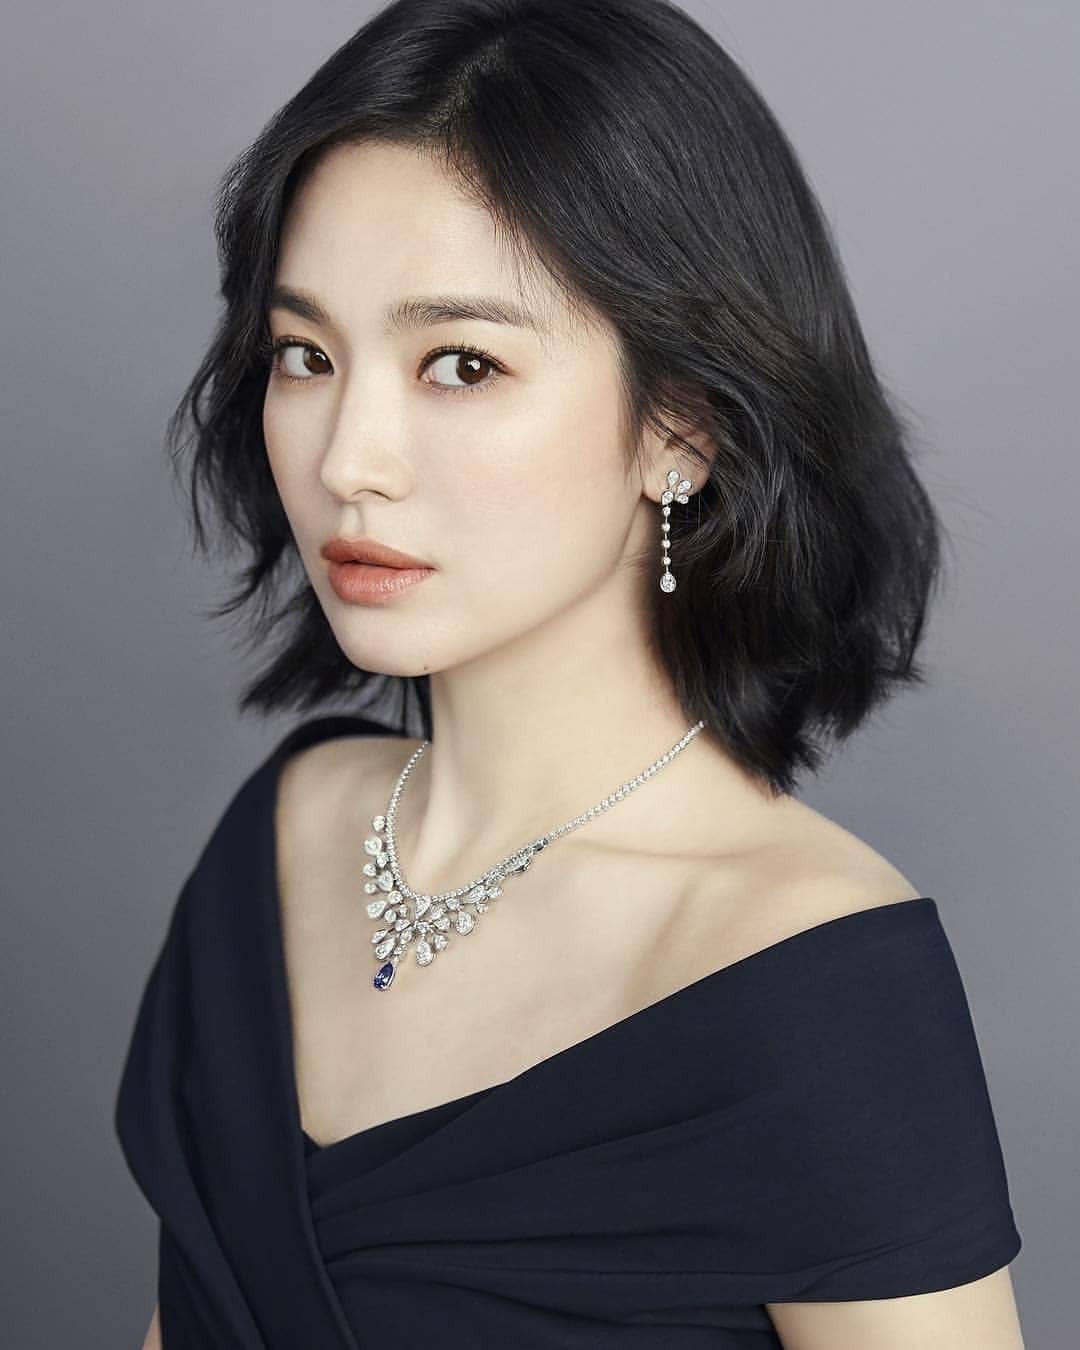 Những thị phi ồn ào khiến Song Hye Kyo đánh mất hình ảnh ngọc nữ trong mắt công chúng-2